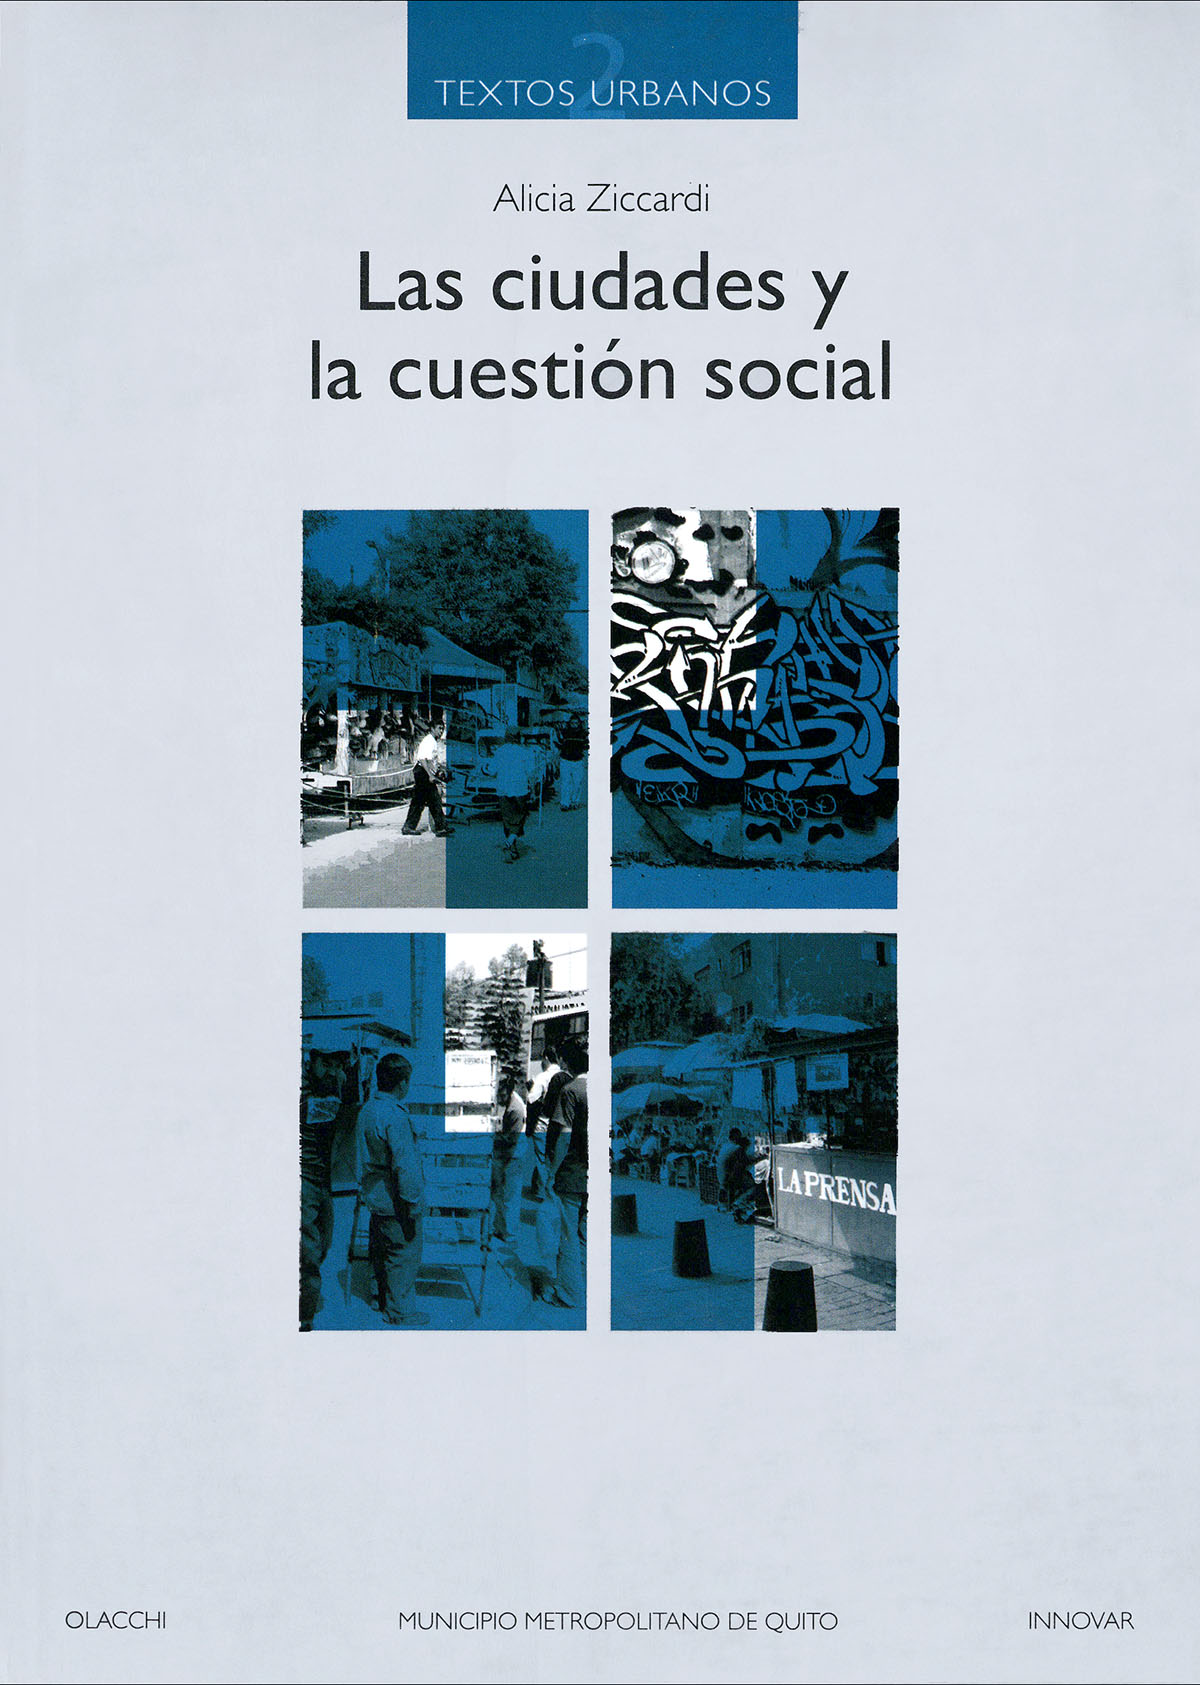 Ziccardi, Alicia <br>Las ciudades y la cuestión social<br/>Quito, Ecuador: Organización Latinoamericana y del Caribe de Centros Históricos (OLACCHI) : Municipio del Distrito Metropolitano de Quito (MDMQ) : Empresa de Desarrollo Urbano de Quito (INNOVAR). 2009. 346 páginas 